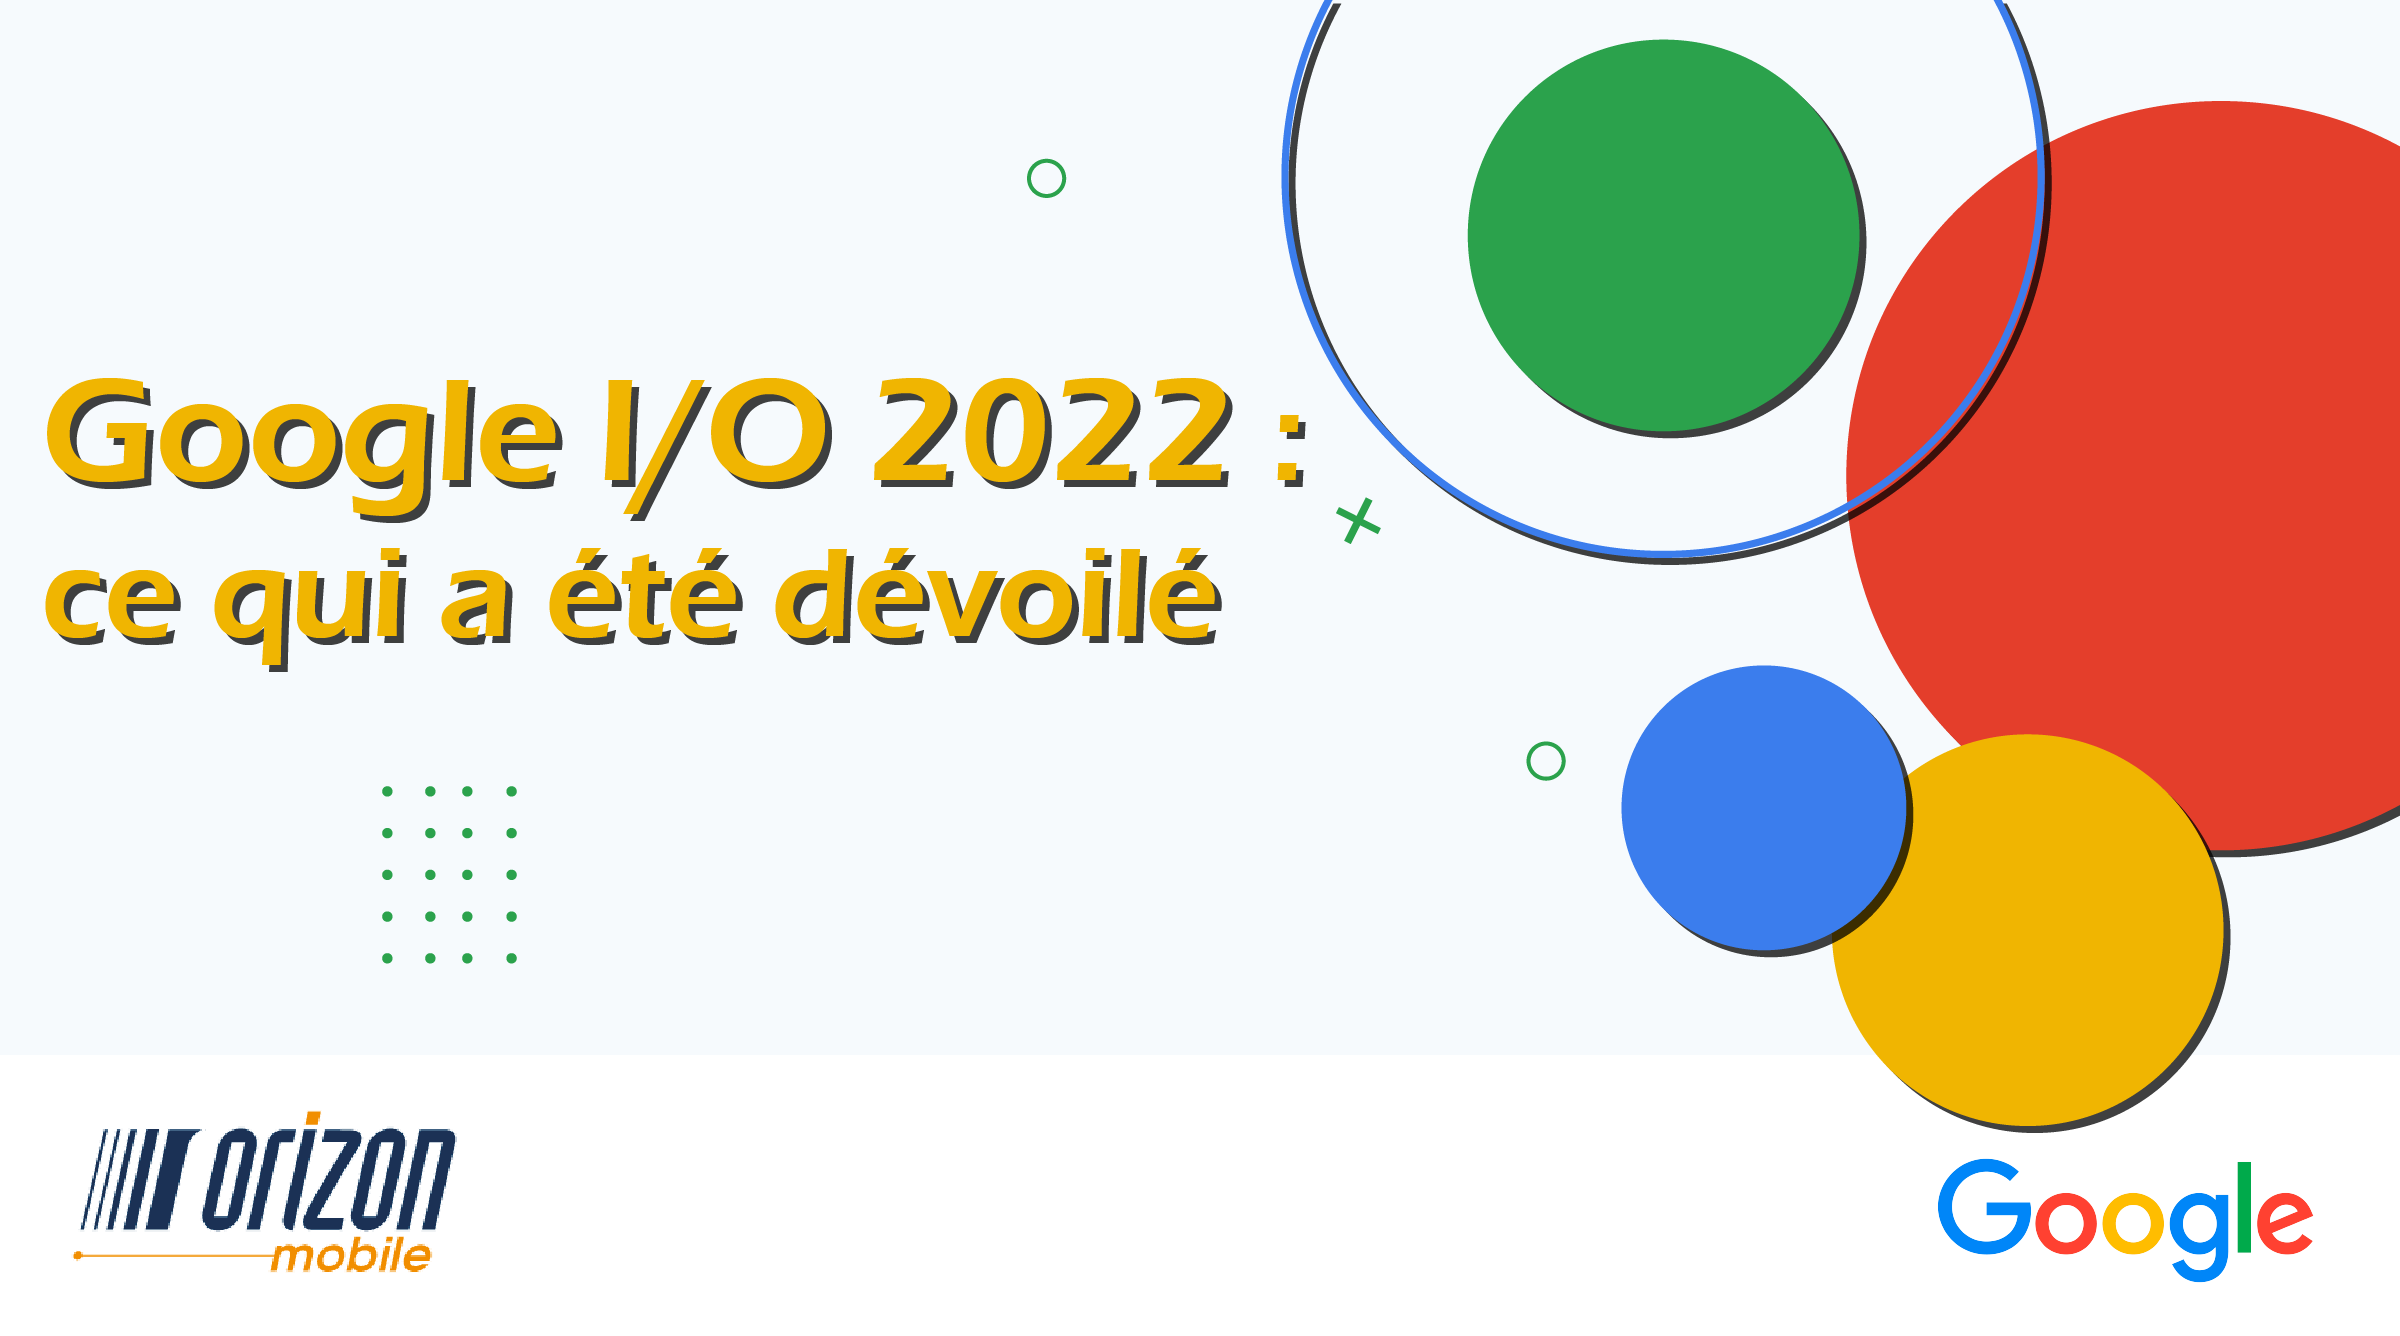 Gabarit blog - google IO 2022 fr_Plan de travail 1